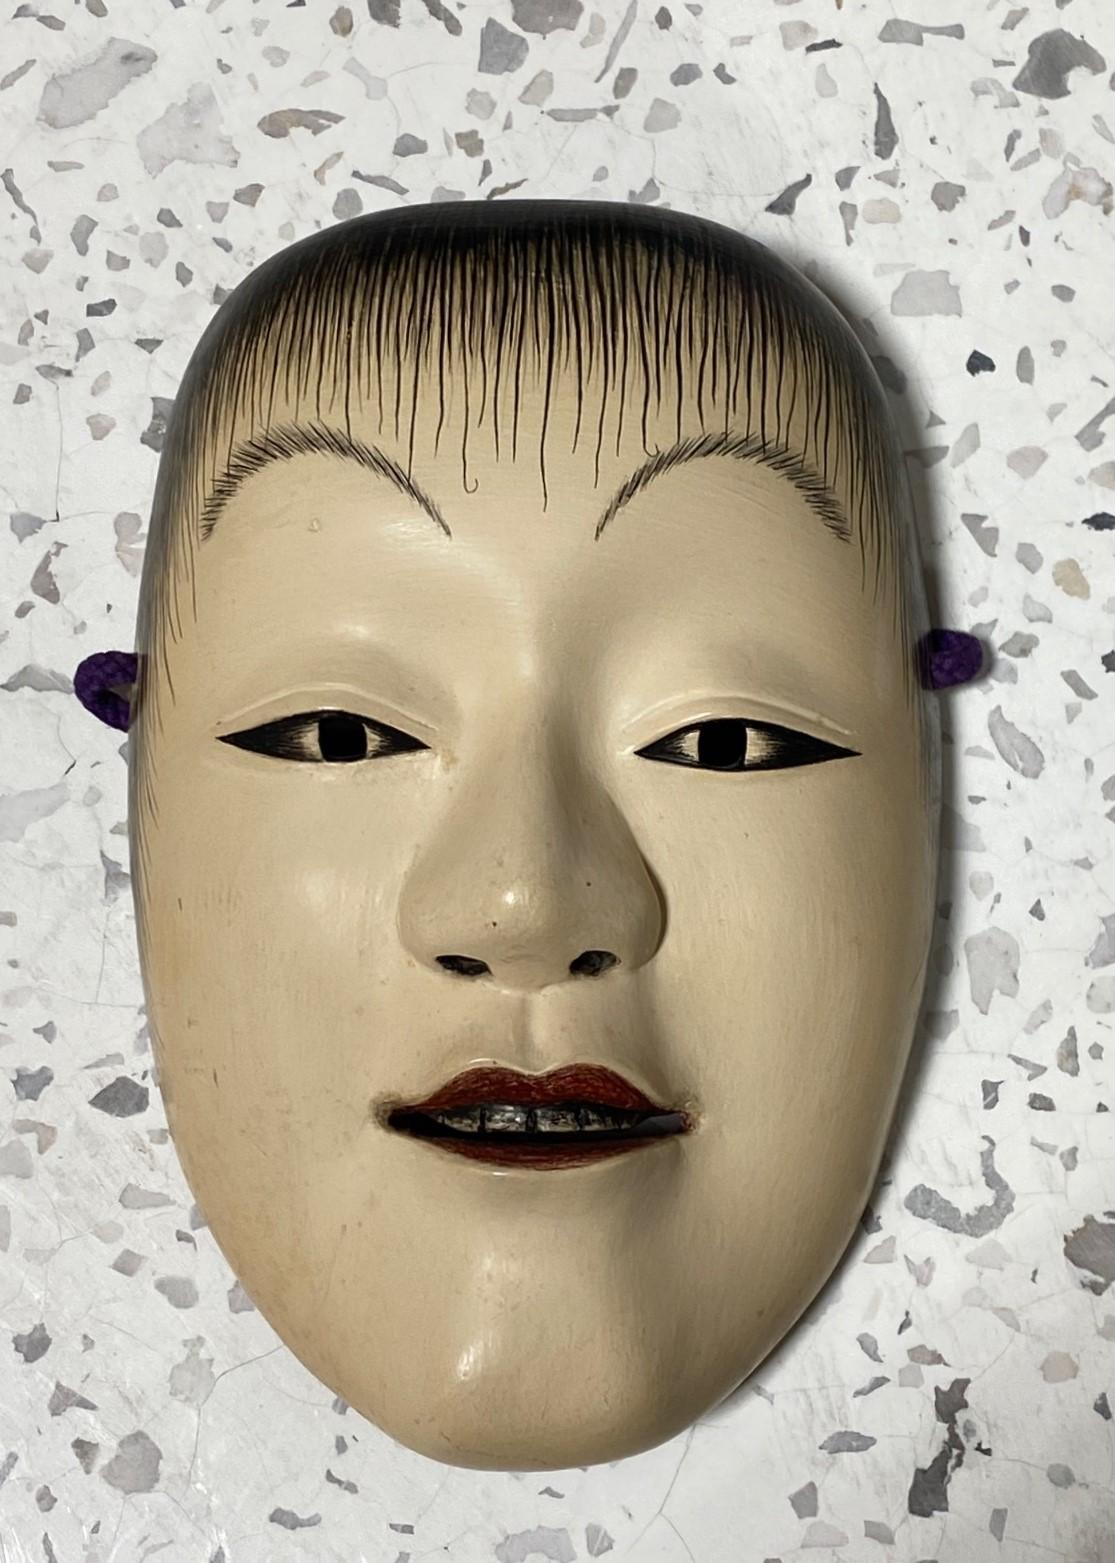 Eine wunderschöne, wunderbar gearbeitete, verführerische Maske, die für das japanische Noh-Theater hergestellt wurde.

Die Maske ist handgefertigt und handgeschnitzt aus Naturholz und ist vom Hersteller signiert. 

Diese Maske stellt die